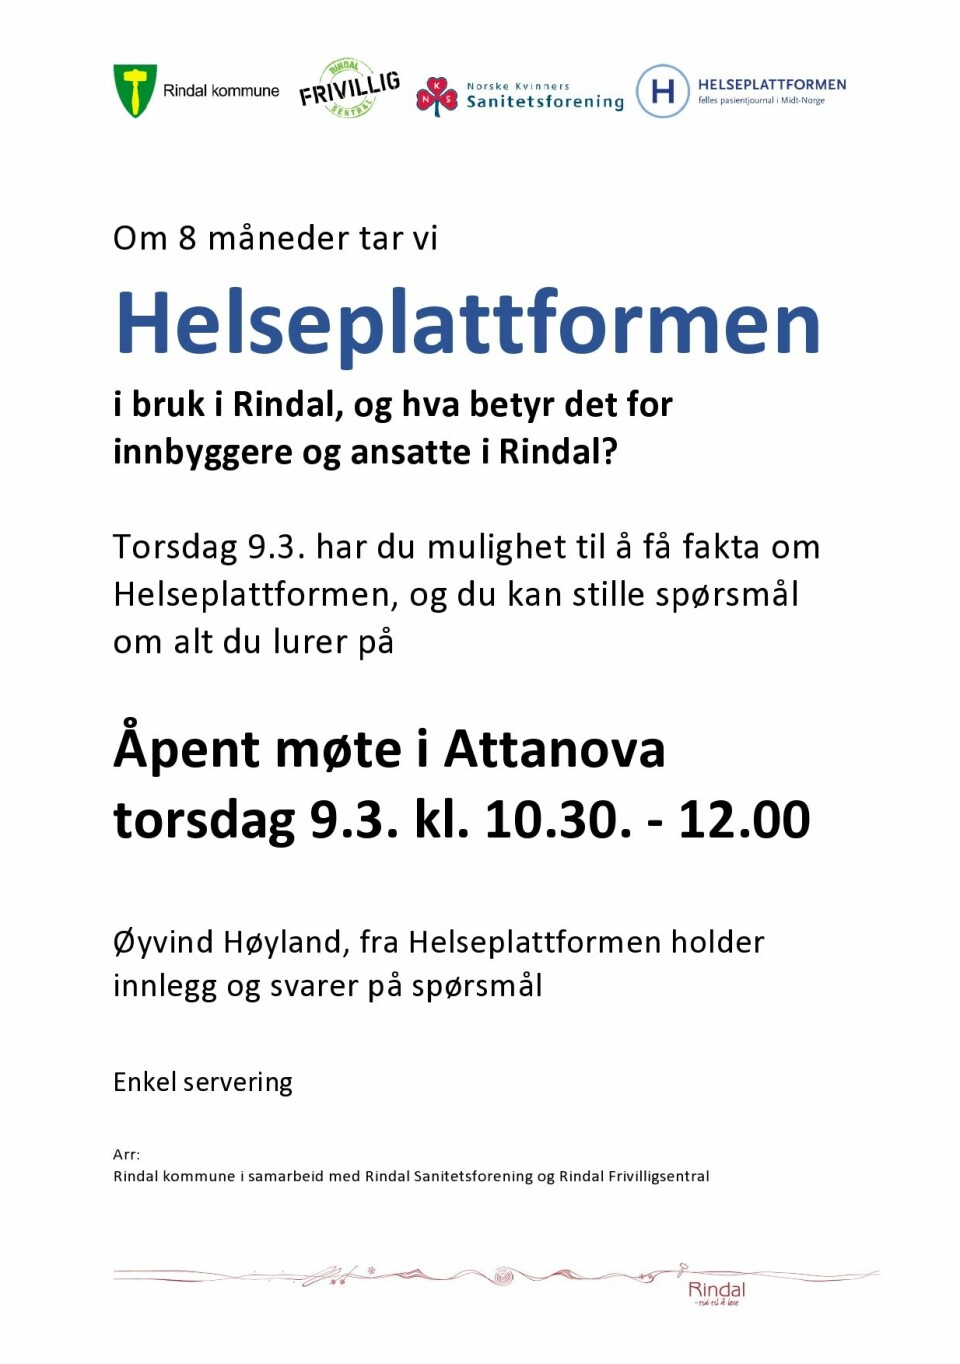 Plakat om åpent møte om Helseplattformen, for innbygerne i Rinda. Attanova torsdag 9. mars kl 10.30